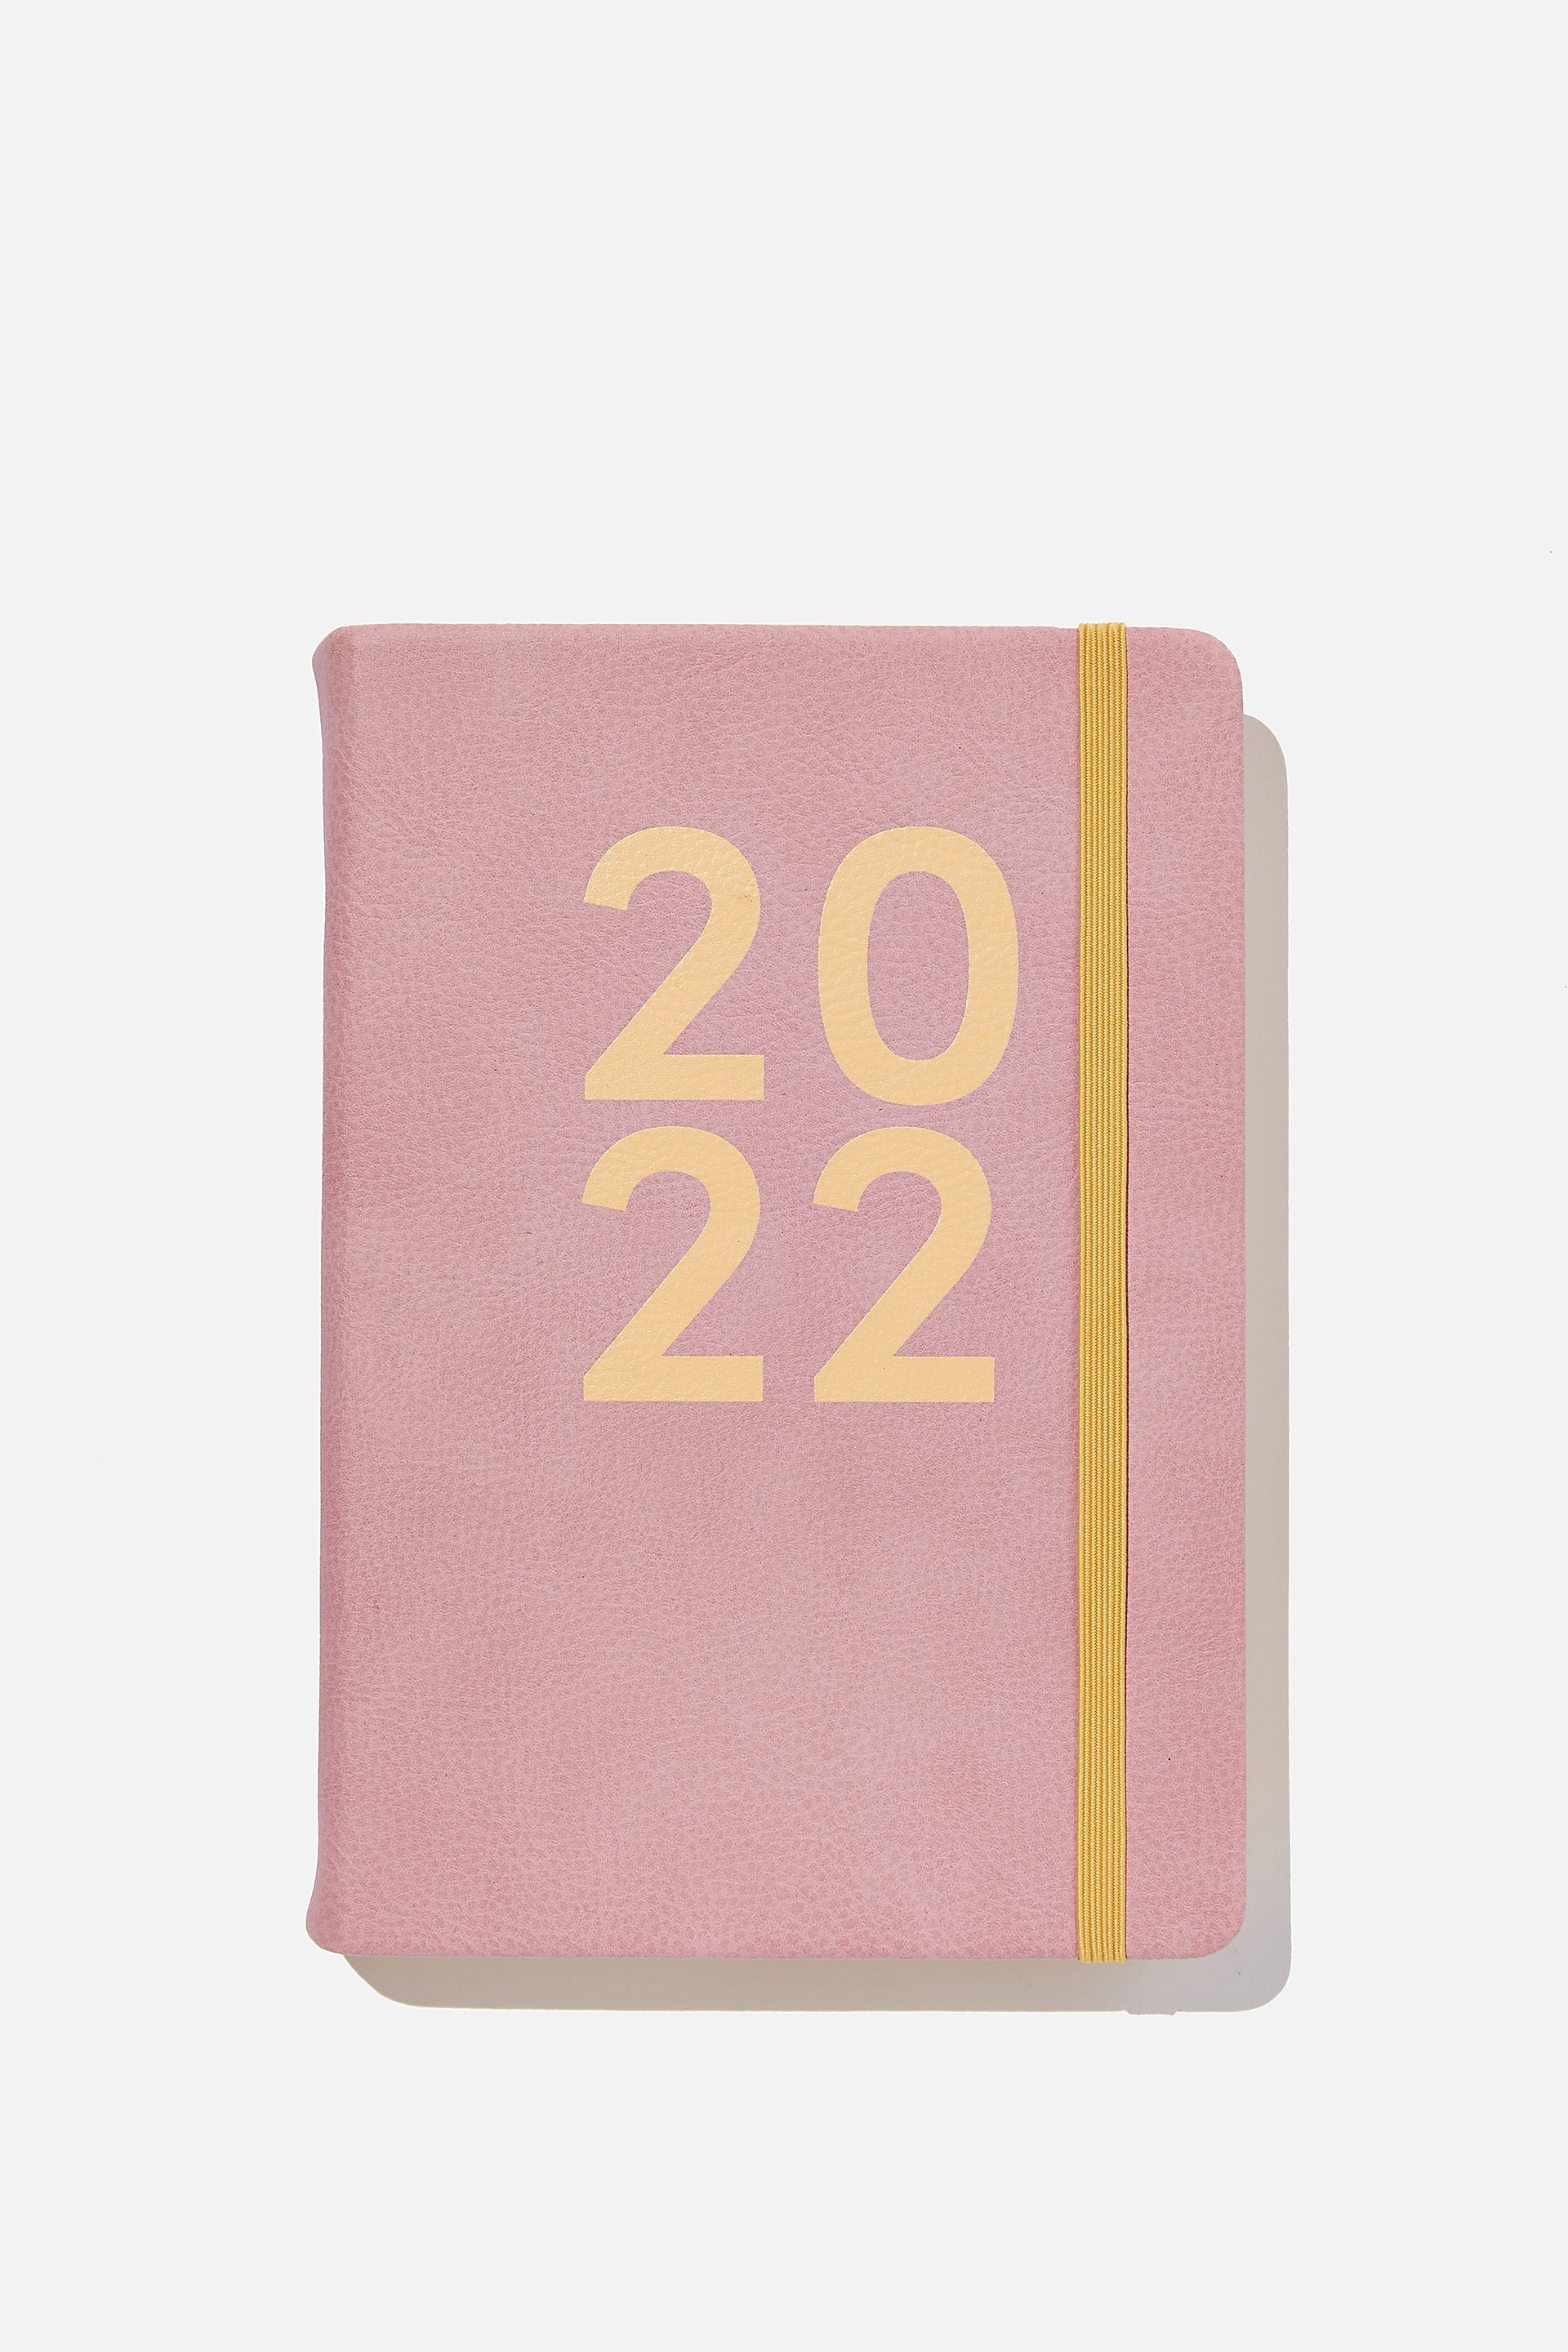 Typo - 2022 A5 Daily Buffalo Diary - Dusty lilac